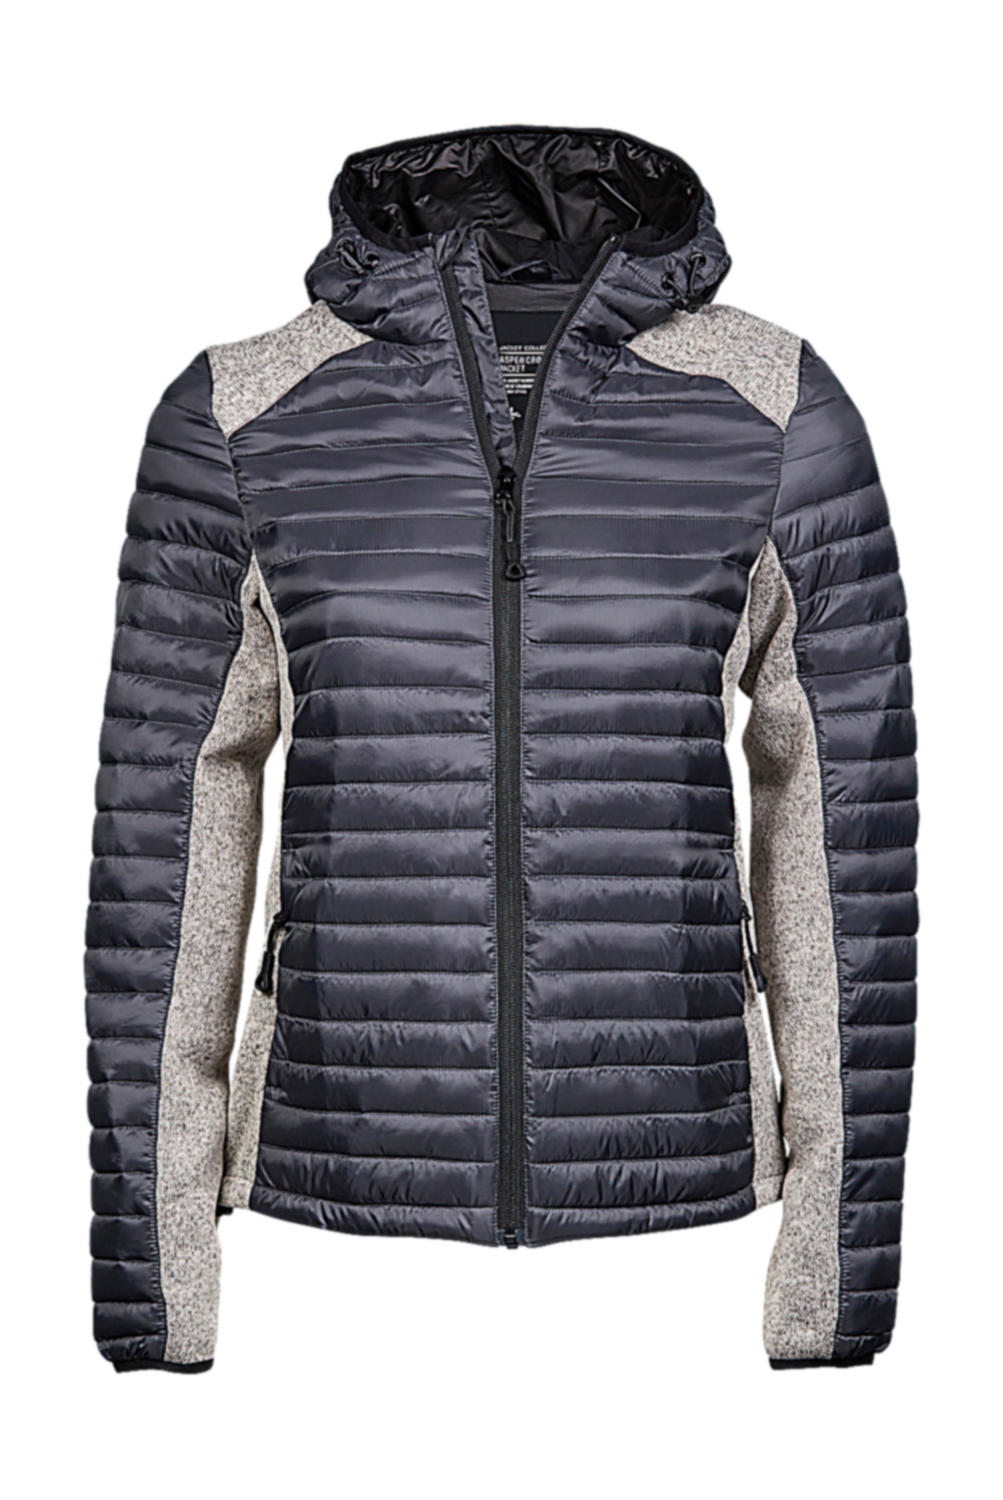  Ladies Hooded Outdoor Crossover Jacket in Farbe Space Grey/Grey Melange